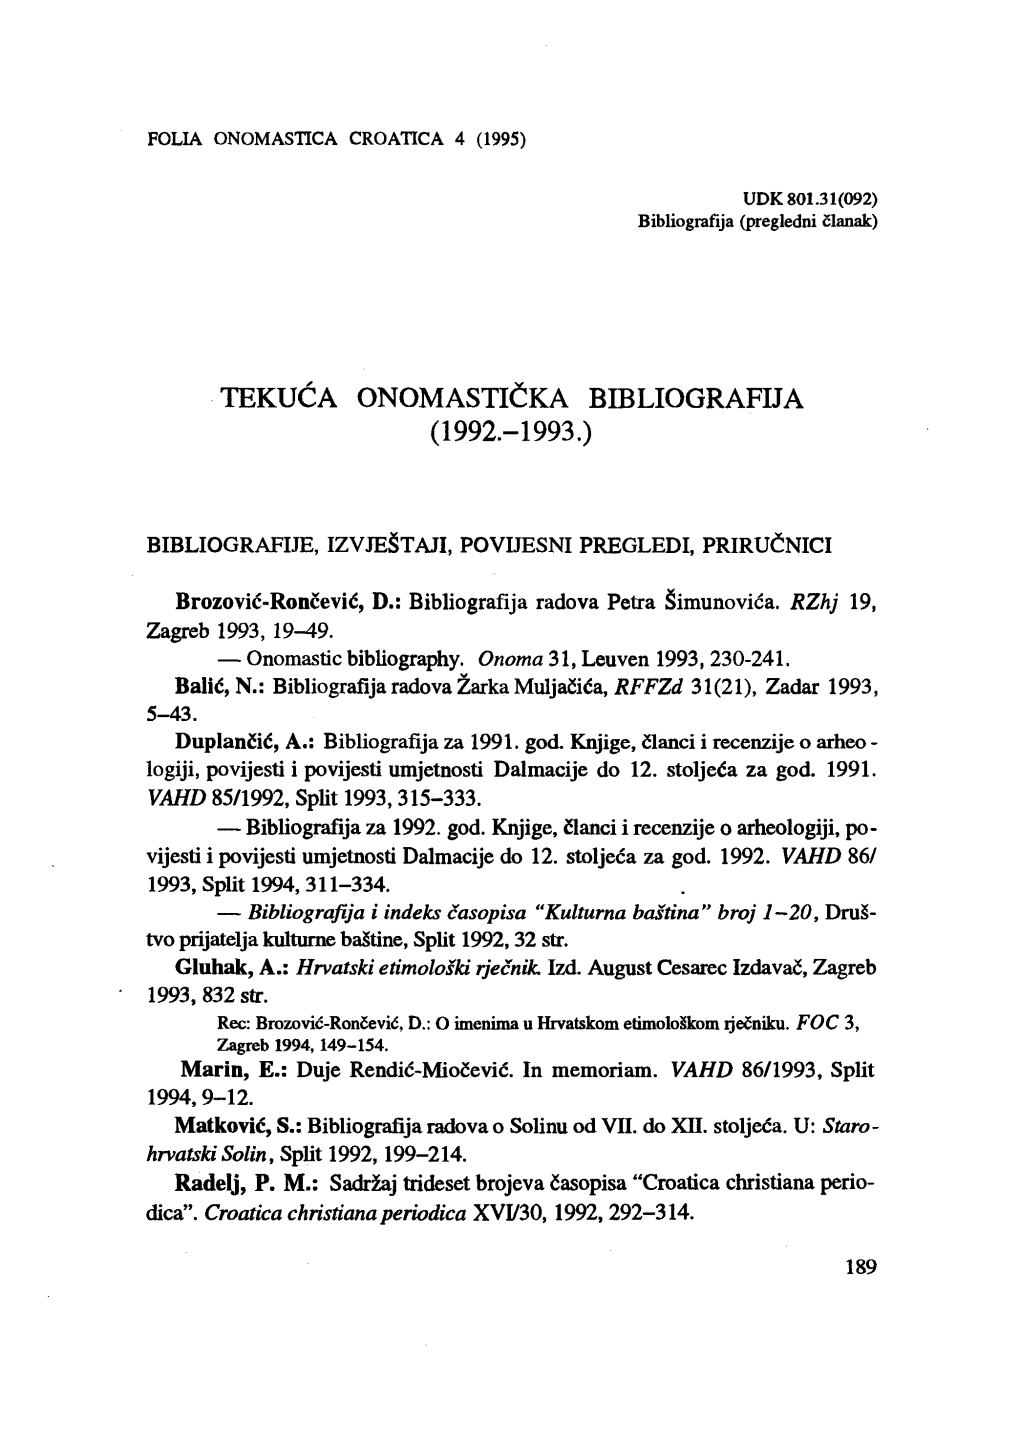 Tekuća Onomastička Bibliografija ( 1992.- 1993.)